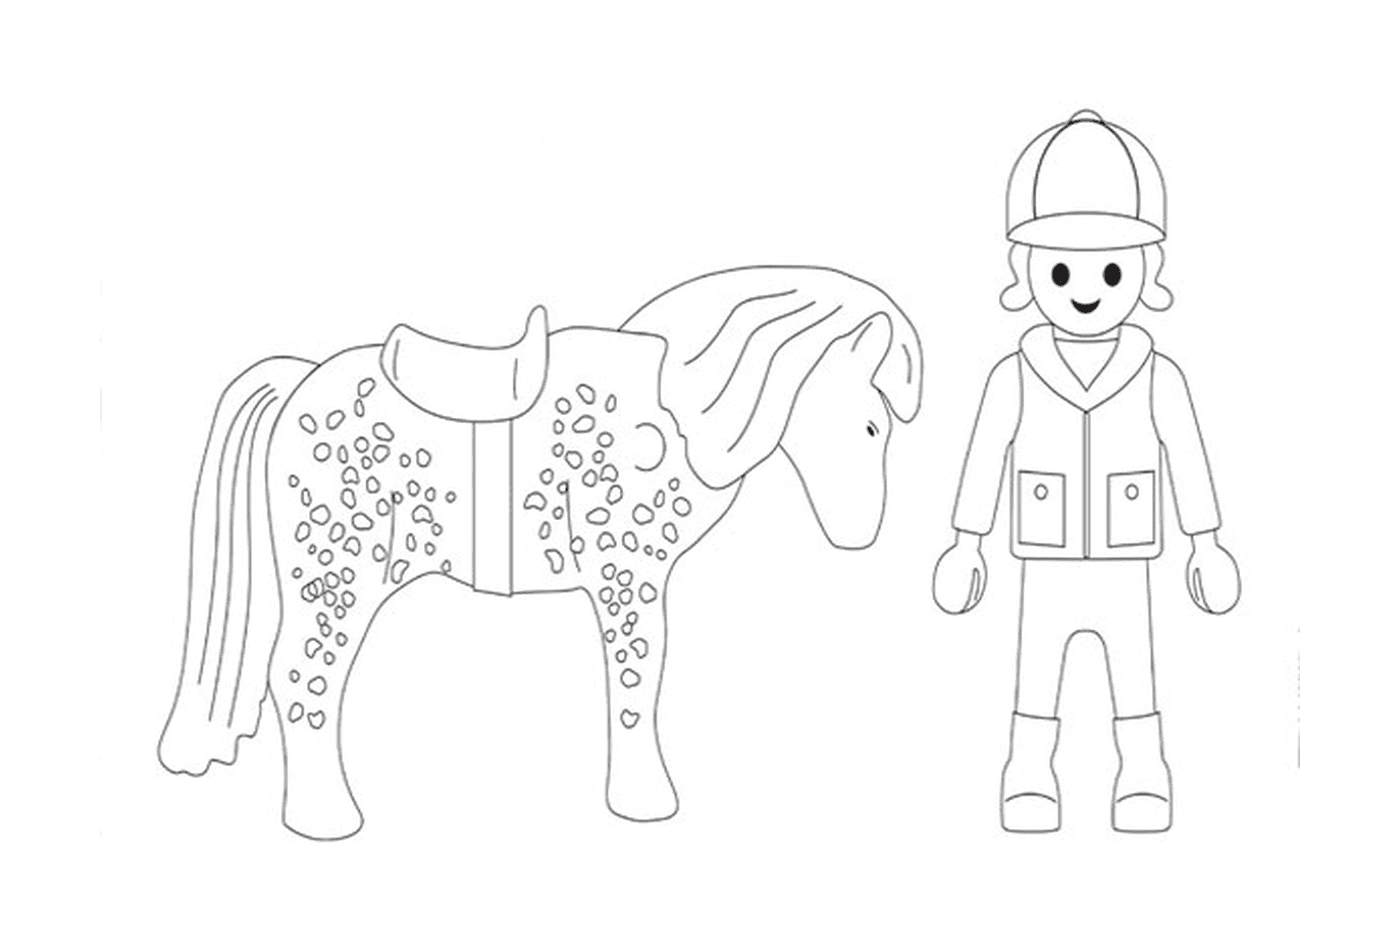  Cavalo de Playmobil - Imagem de uma pessoa e um cavalo 